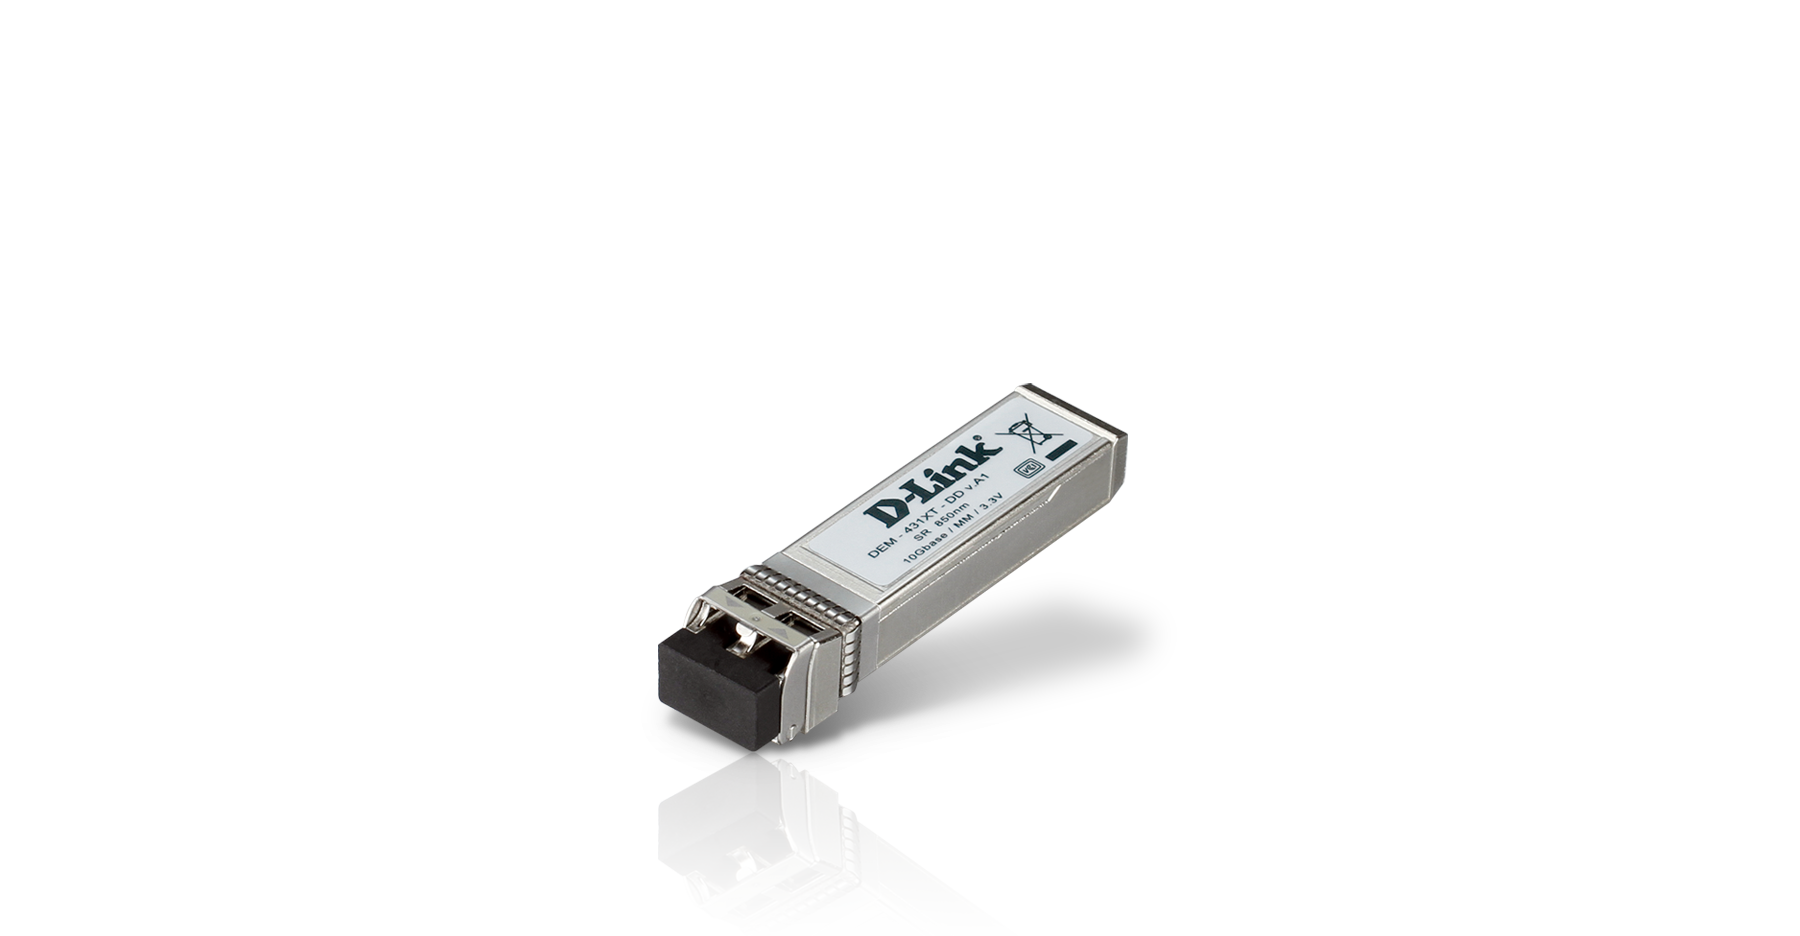 DEM-431XT-DD 10GBase-SR SFP+ Transceiver, DDM, 80/300m